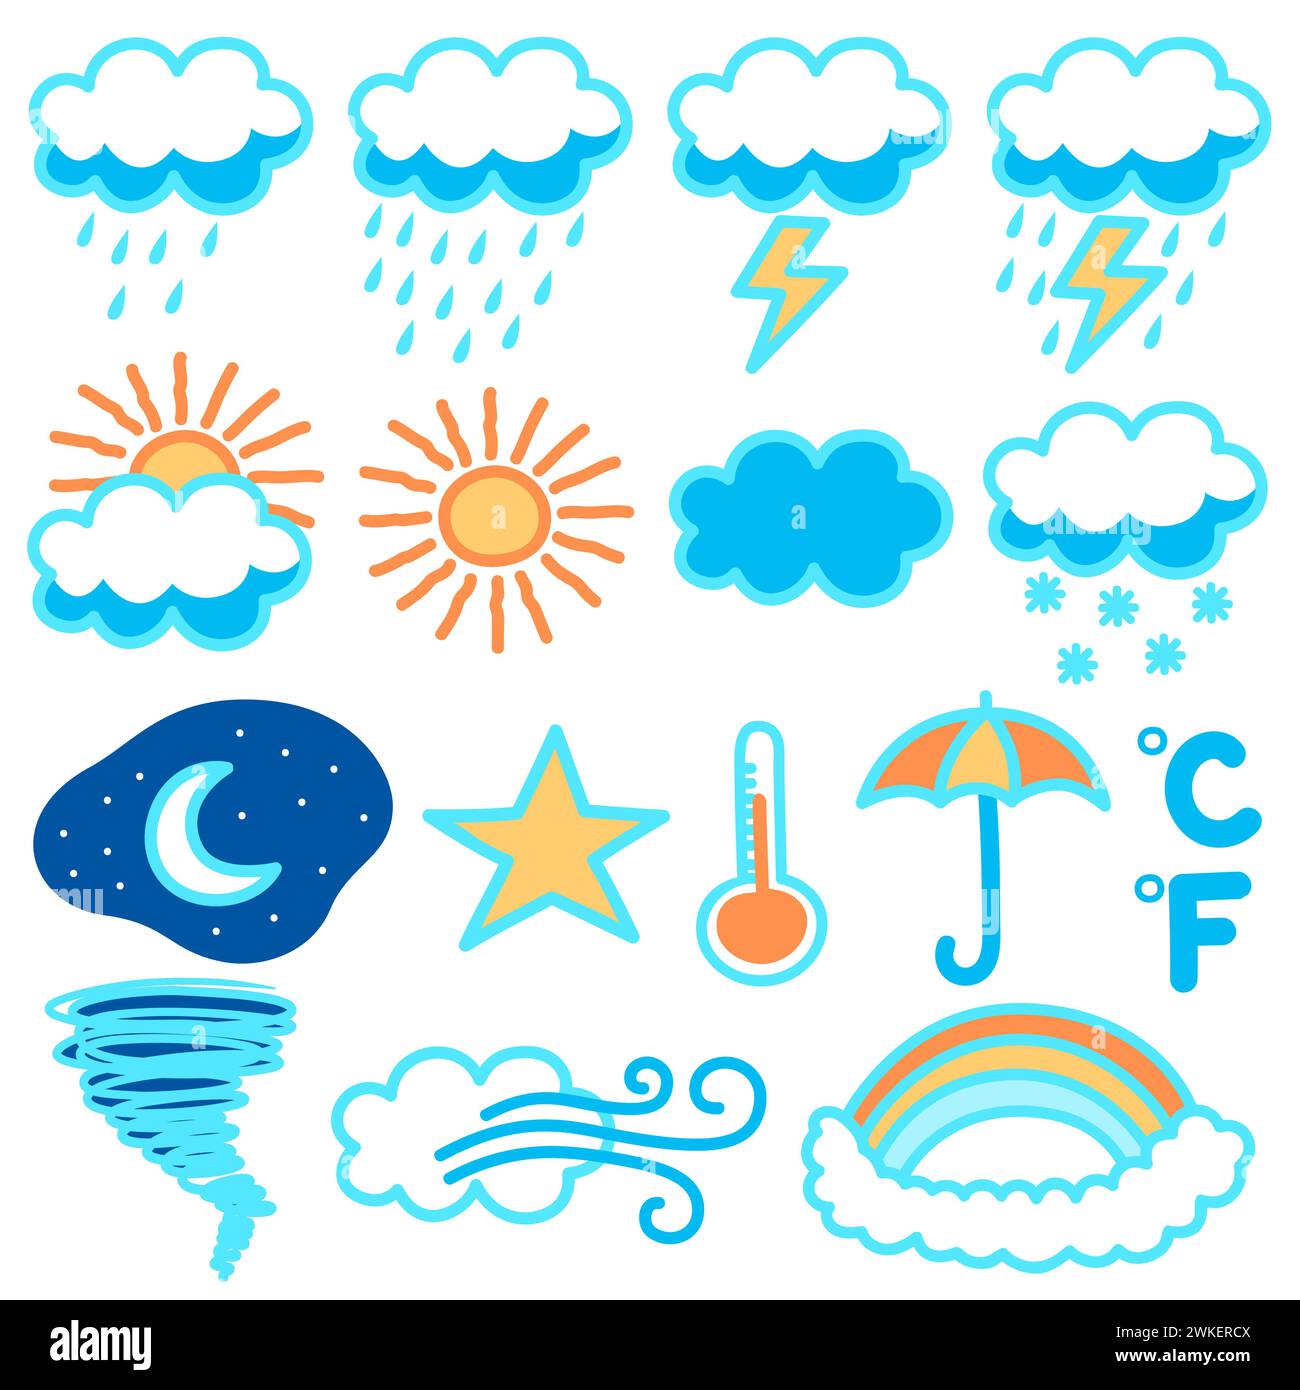 Ensemble d'illustration Doodle avec une variété d'icônes météo. Des jours ensoleillés aux nuits orageuses, cette collection vous couvre d'une touche ludique o Illustration de Vecteur